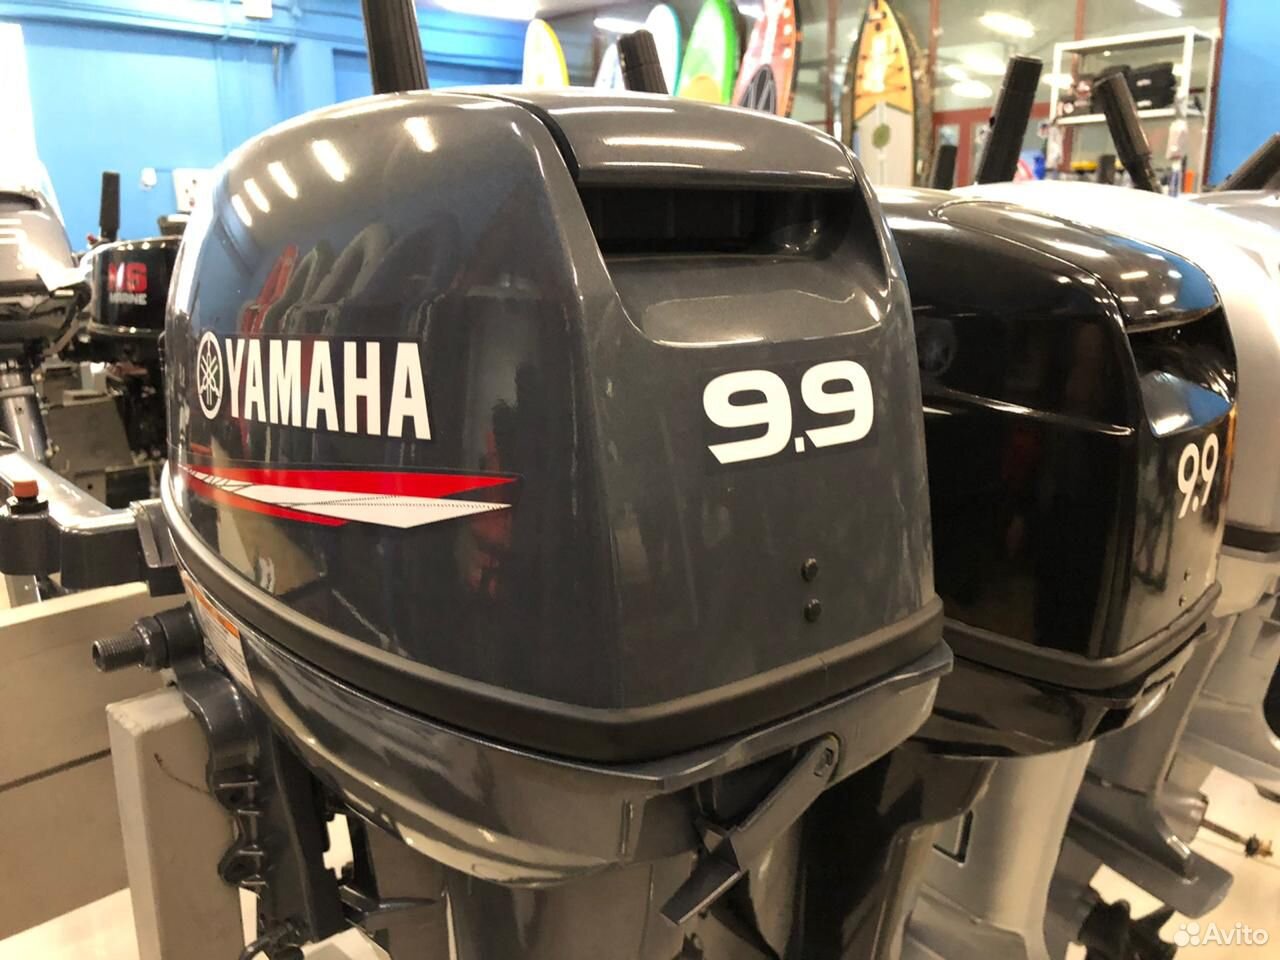 2 тактный Лодочный мотор Yamaha 9.9 gmhs 89020564906 купить 1